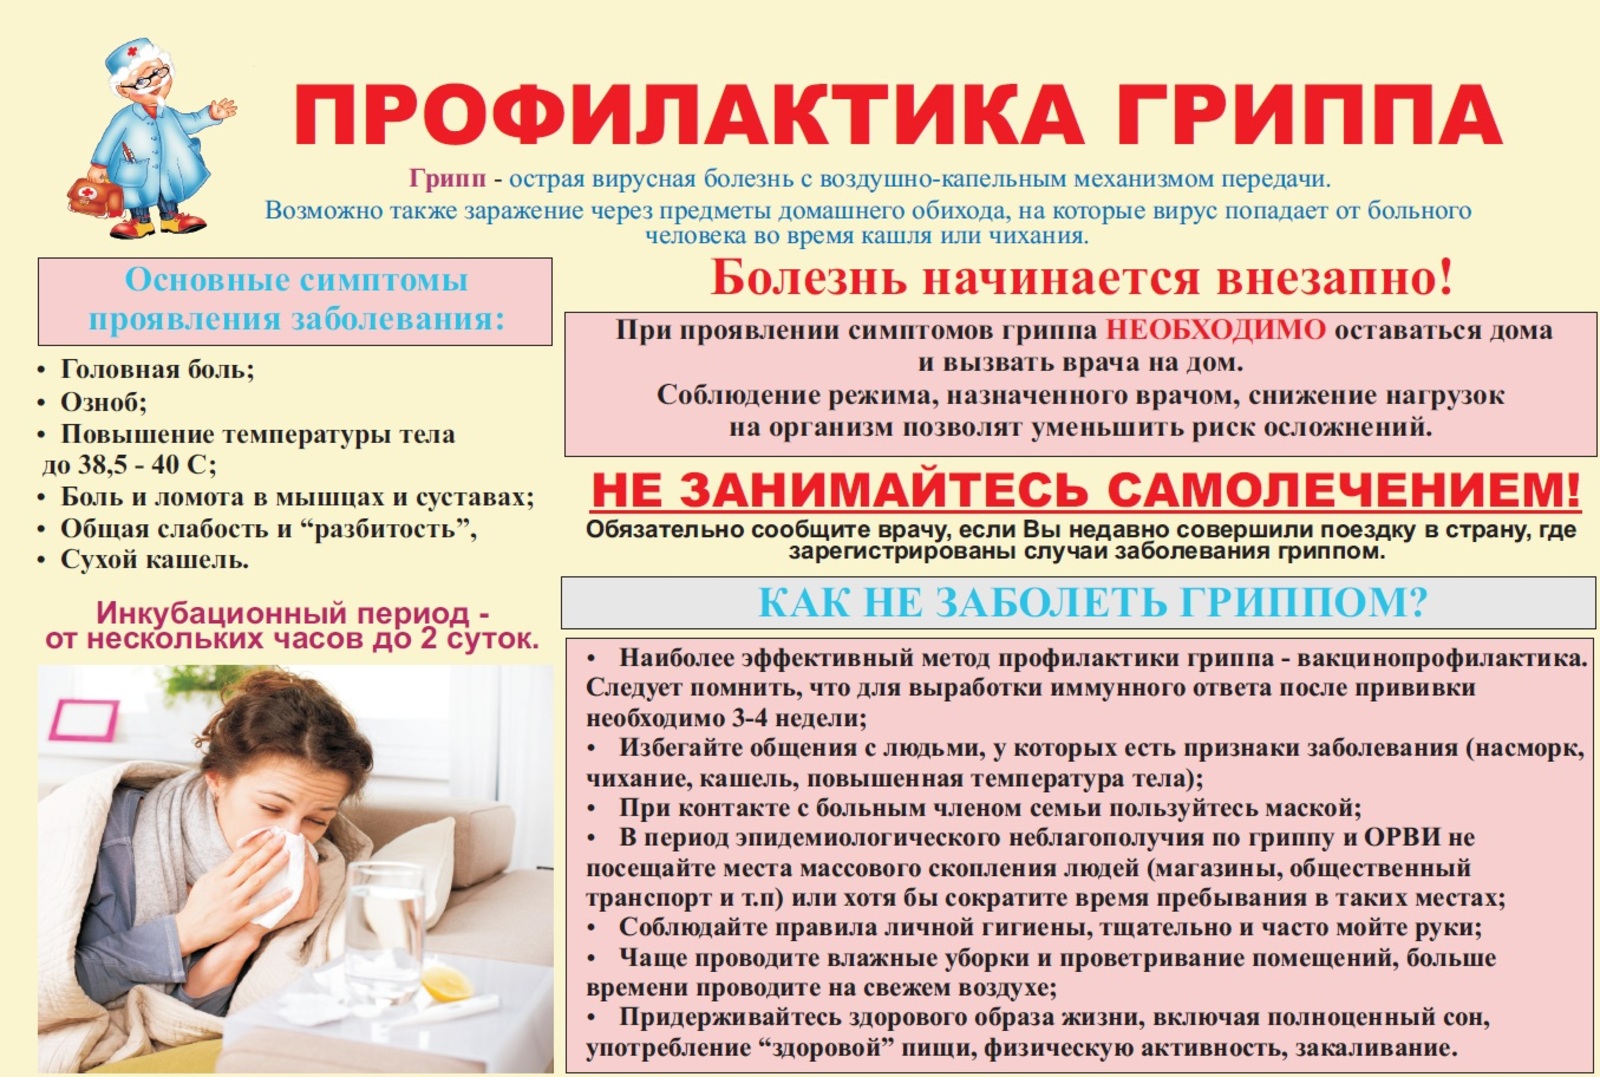 В Башкортостане наблюдается рост заболеваемости гриппом